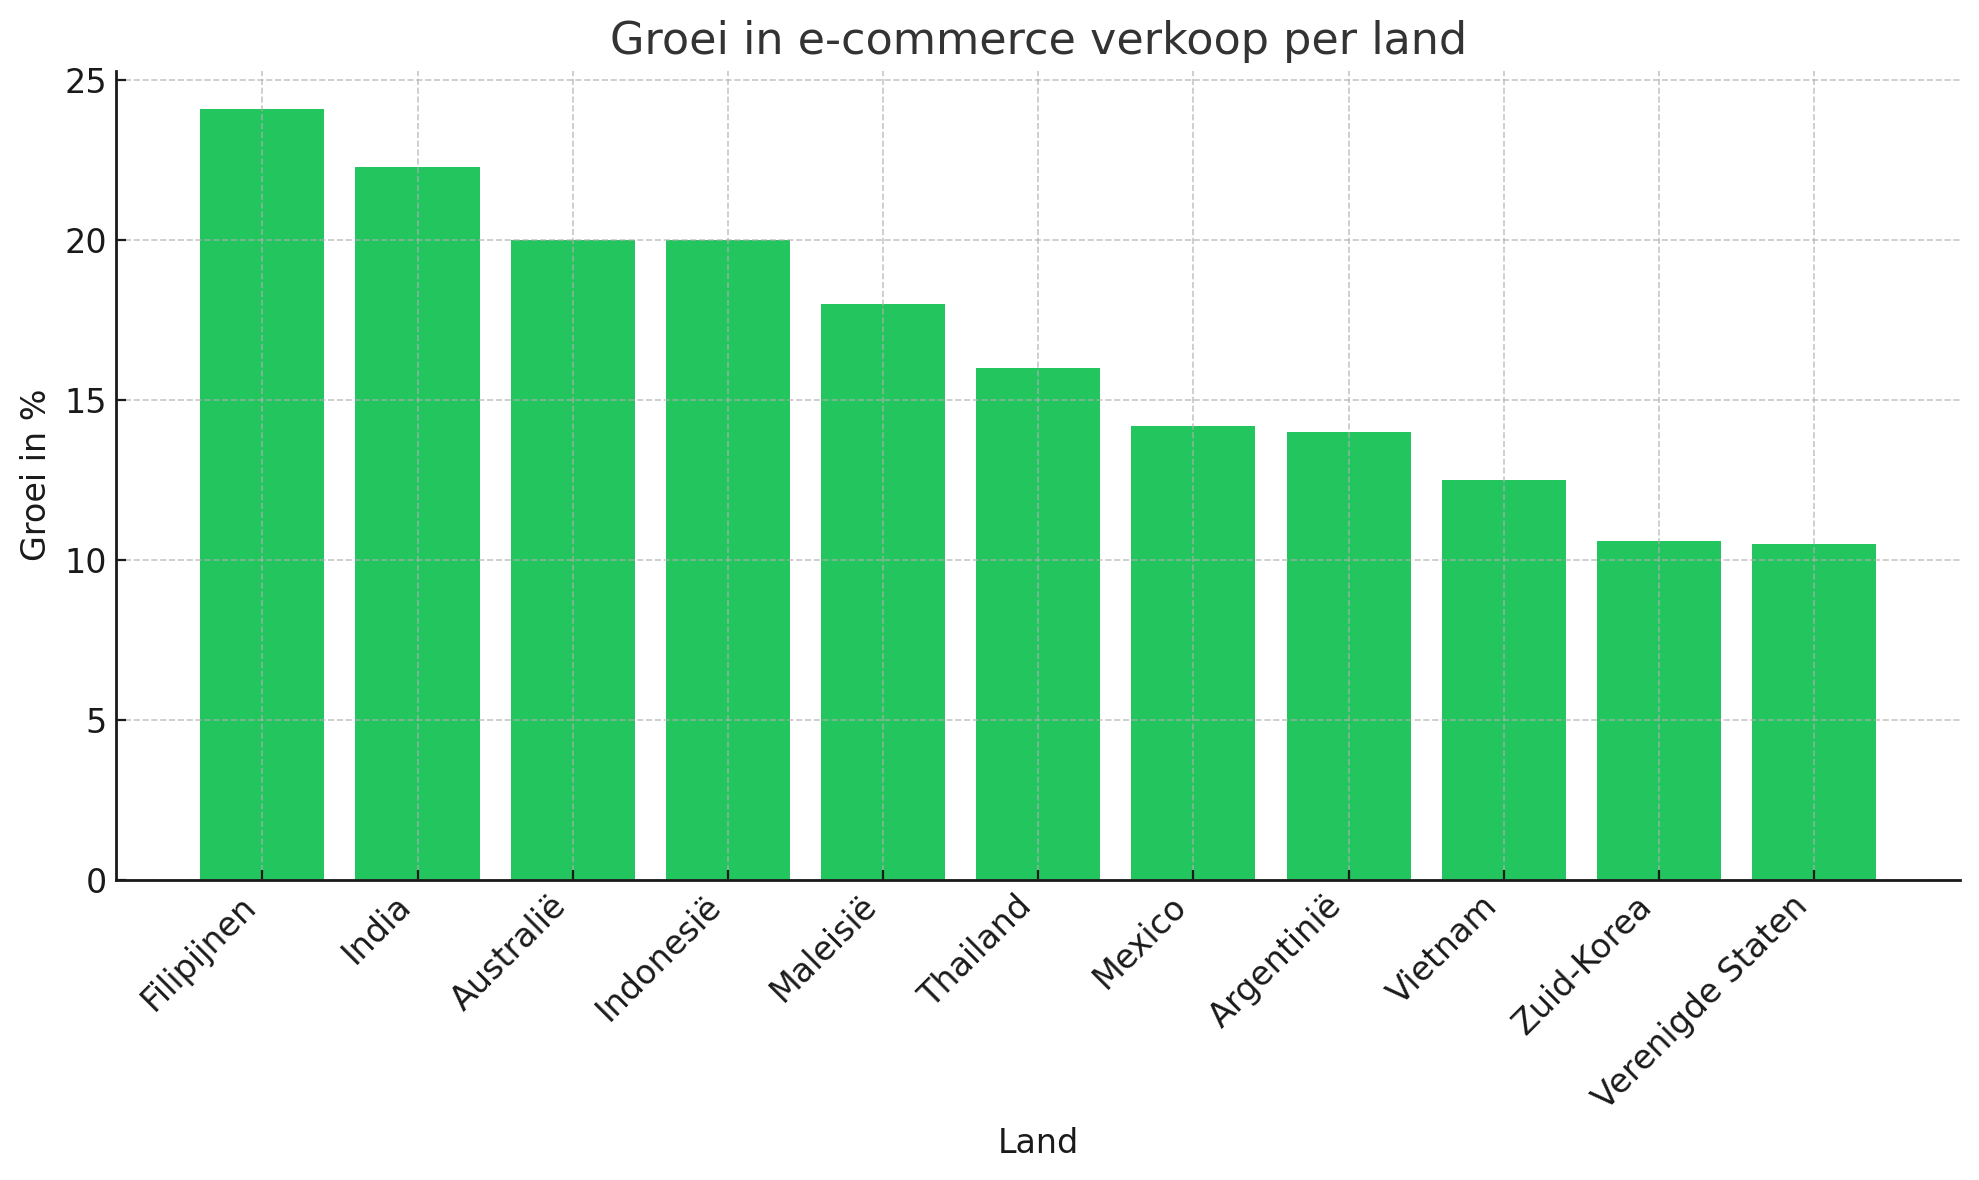 Groei in e-commerce verkoop per land